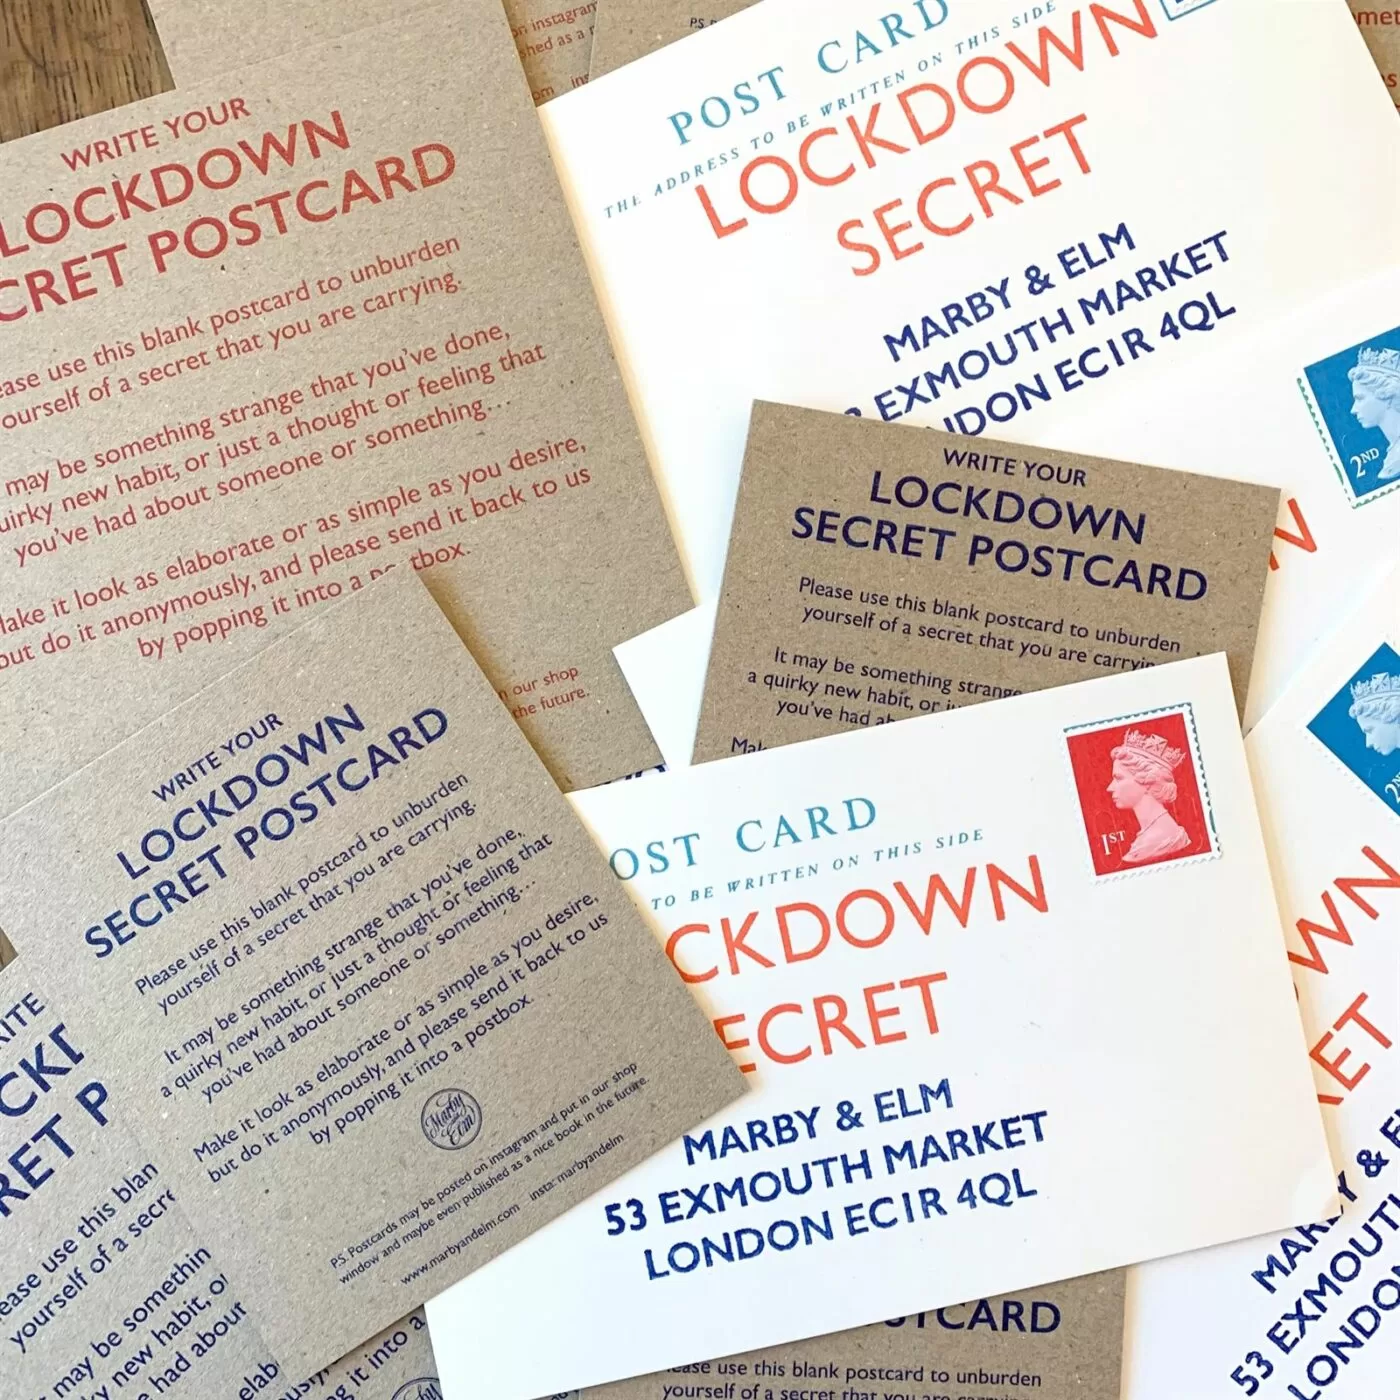 Selection of secret lockdown postcards